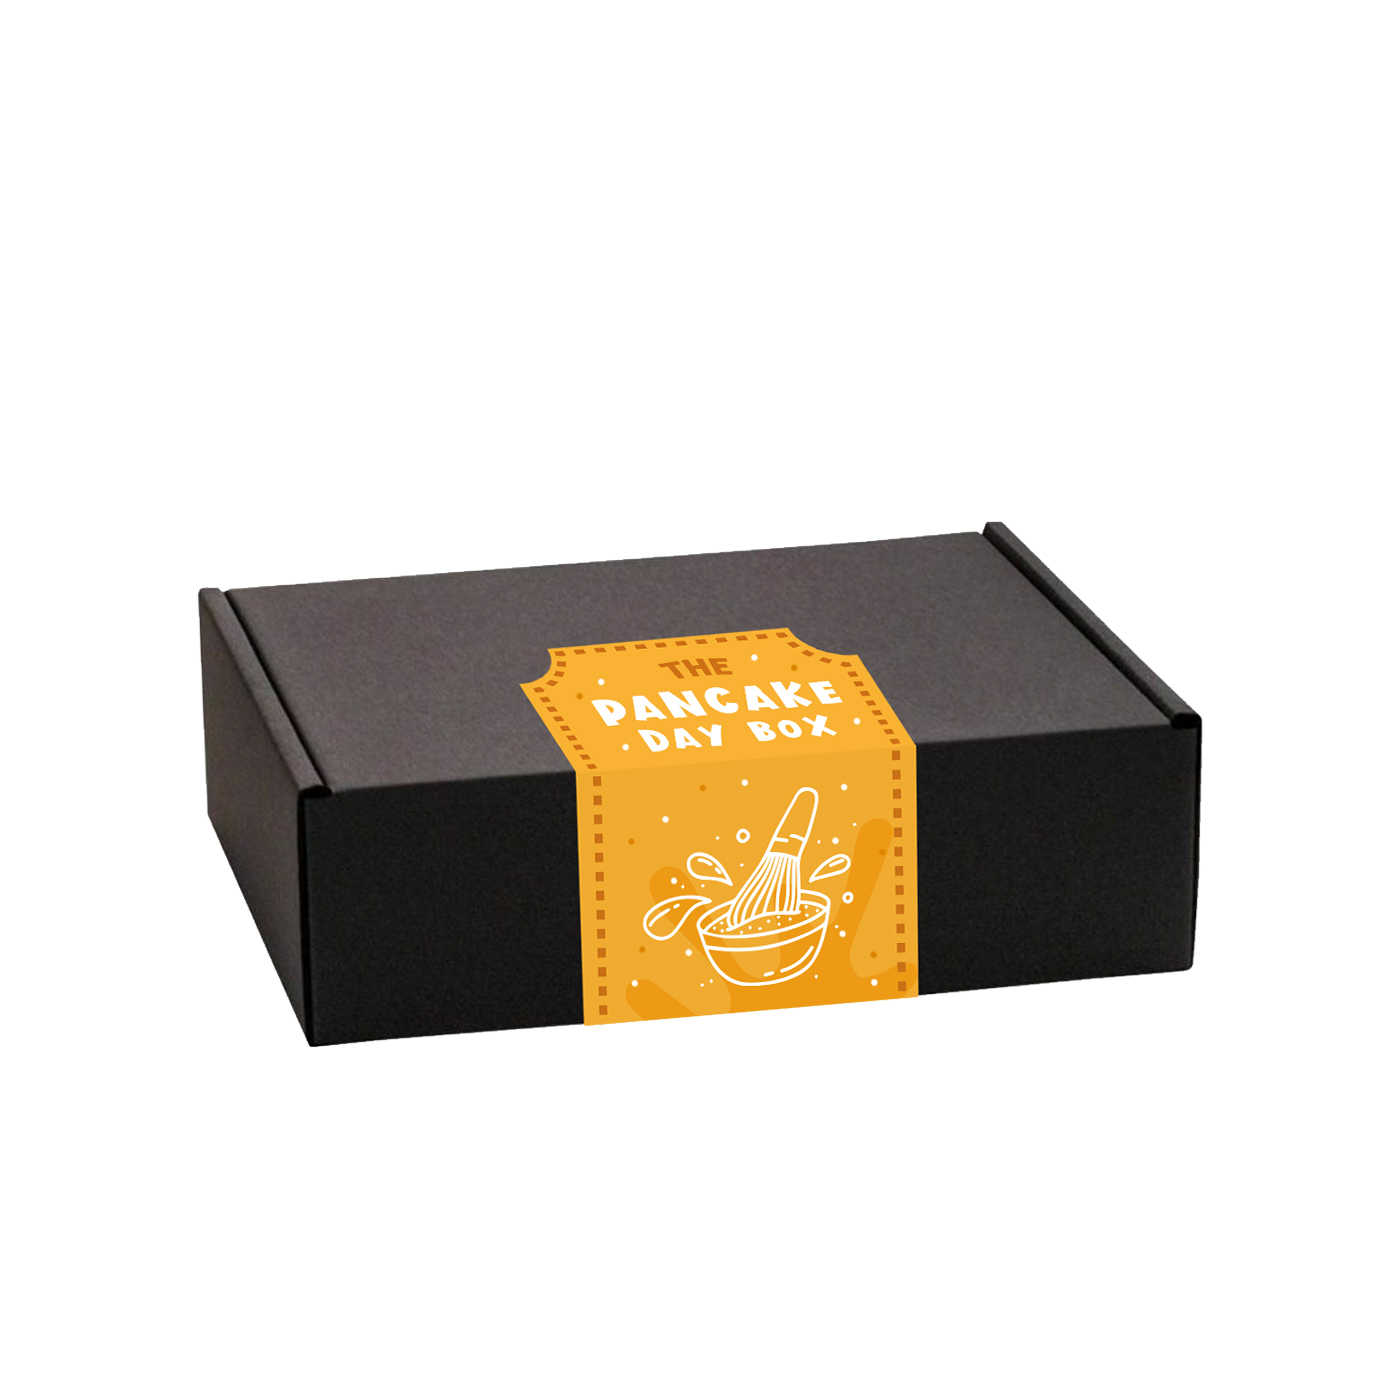 Pancake Day – Midi Black Gift Box - Pancake Day 2022 Edition